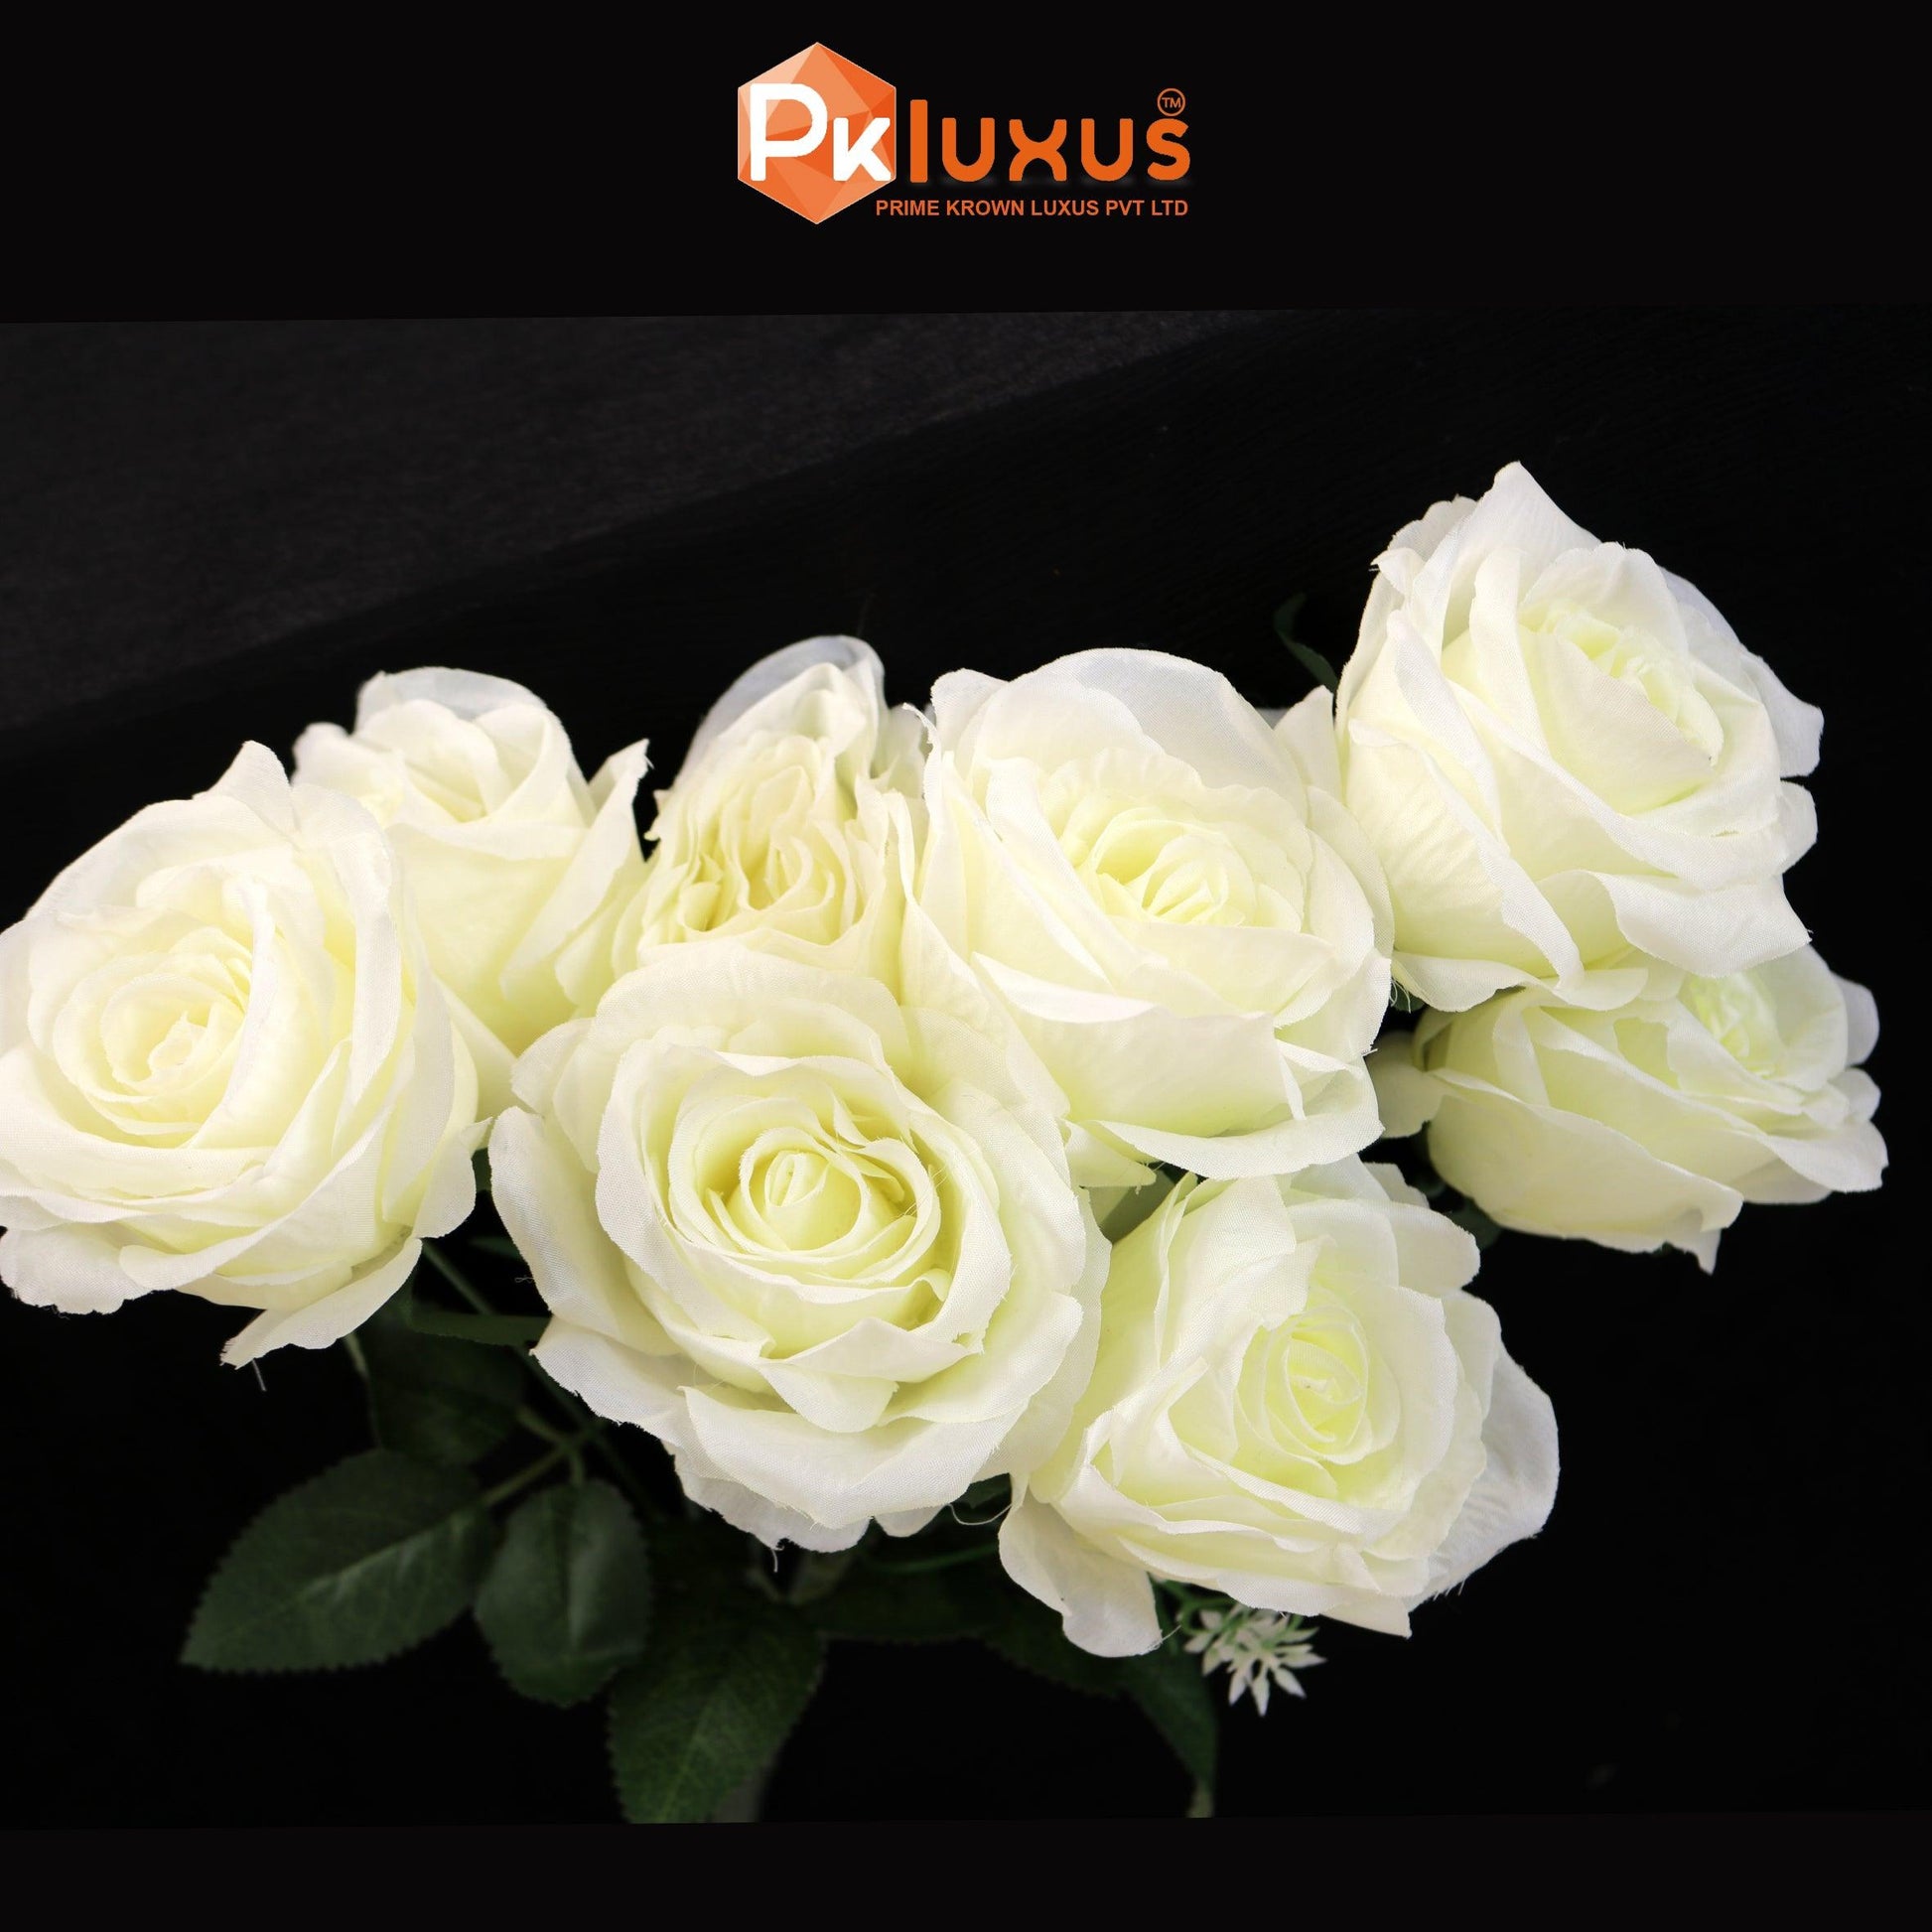 Luxury Roses In Unique Colors | Flower For Vase | PK LUXUS™ - PK LUXUS